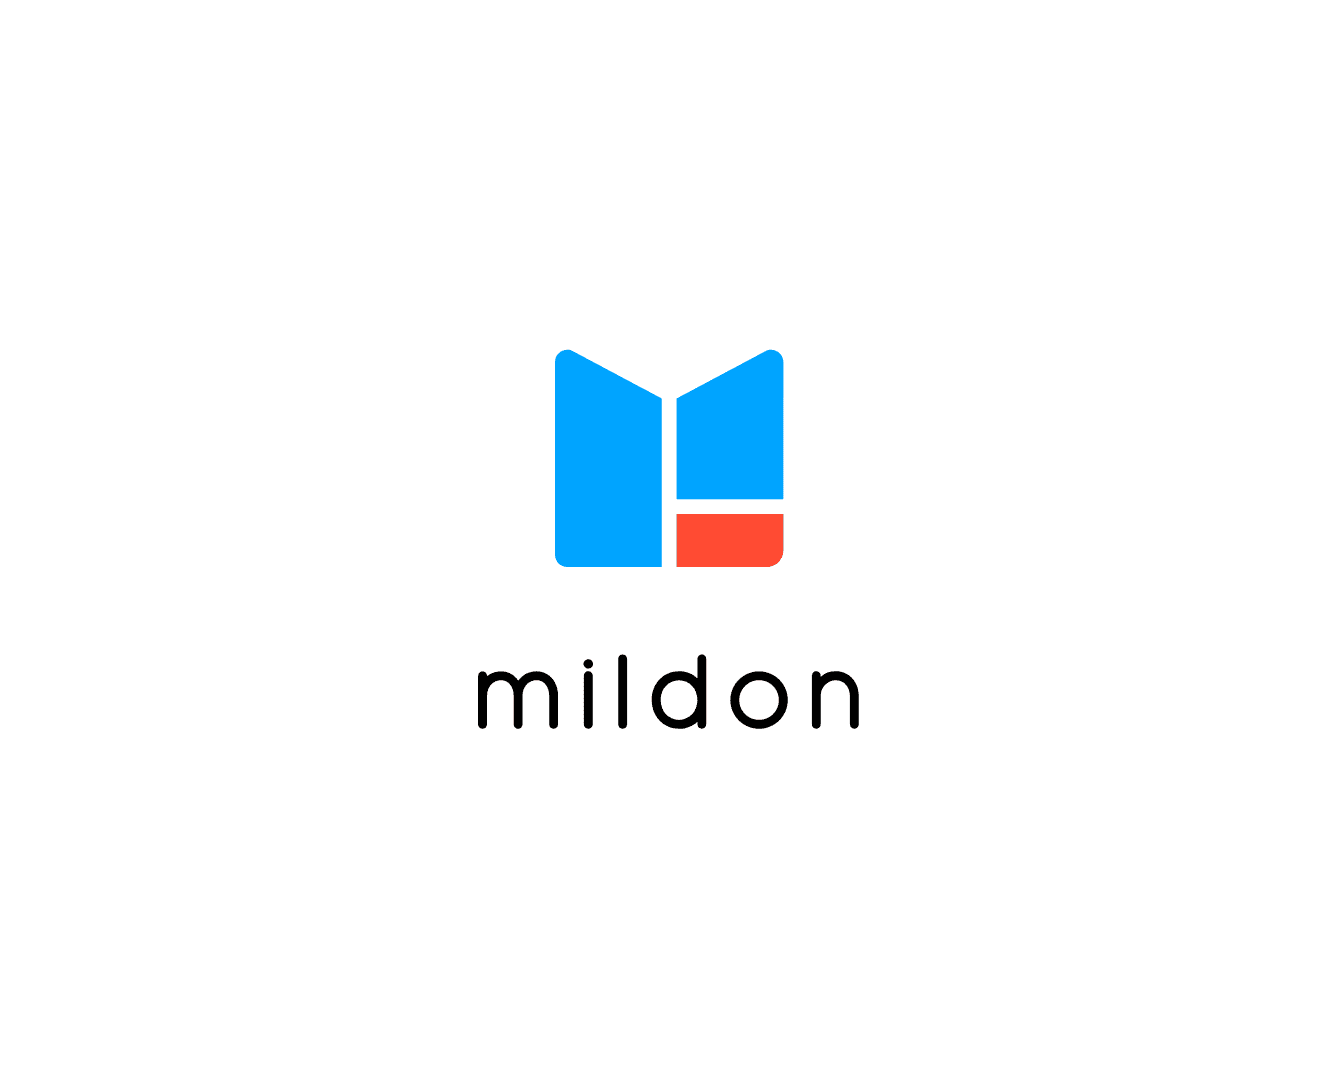 Mildon logo on white